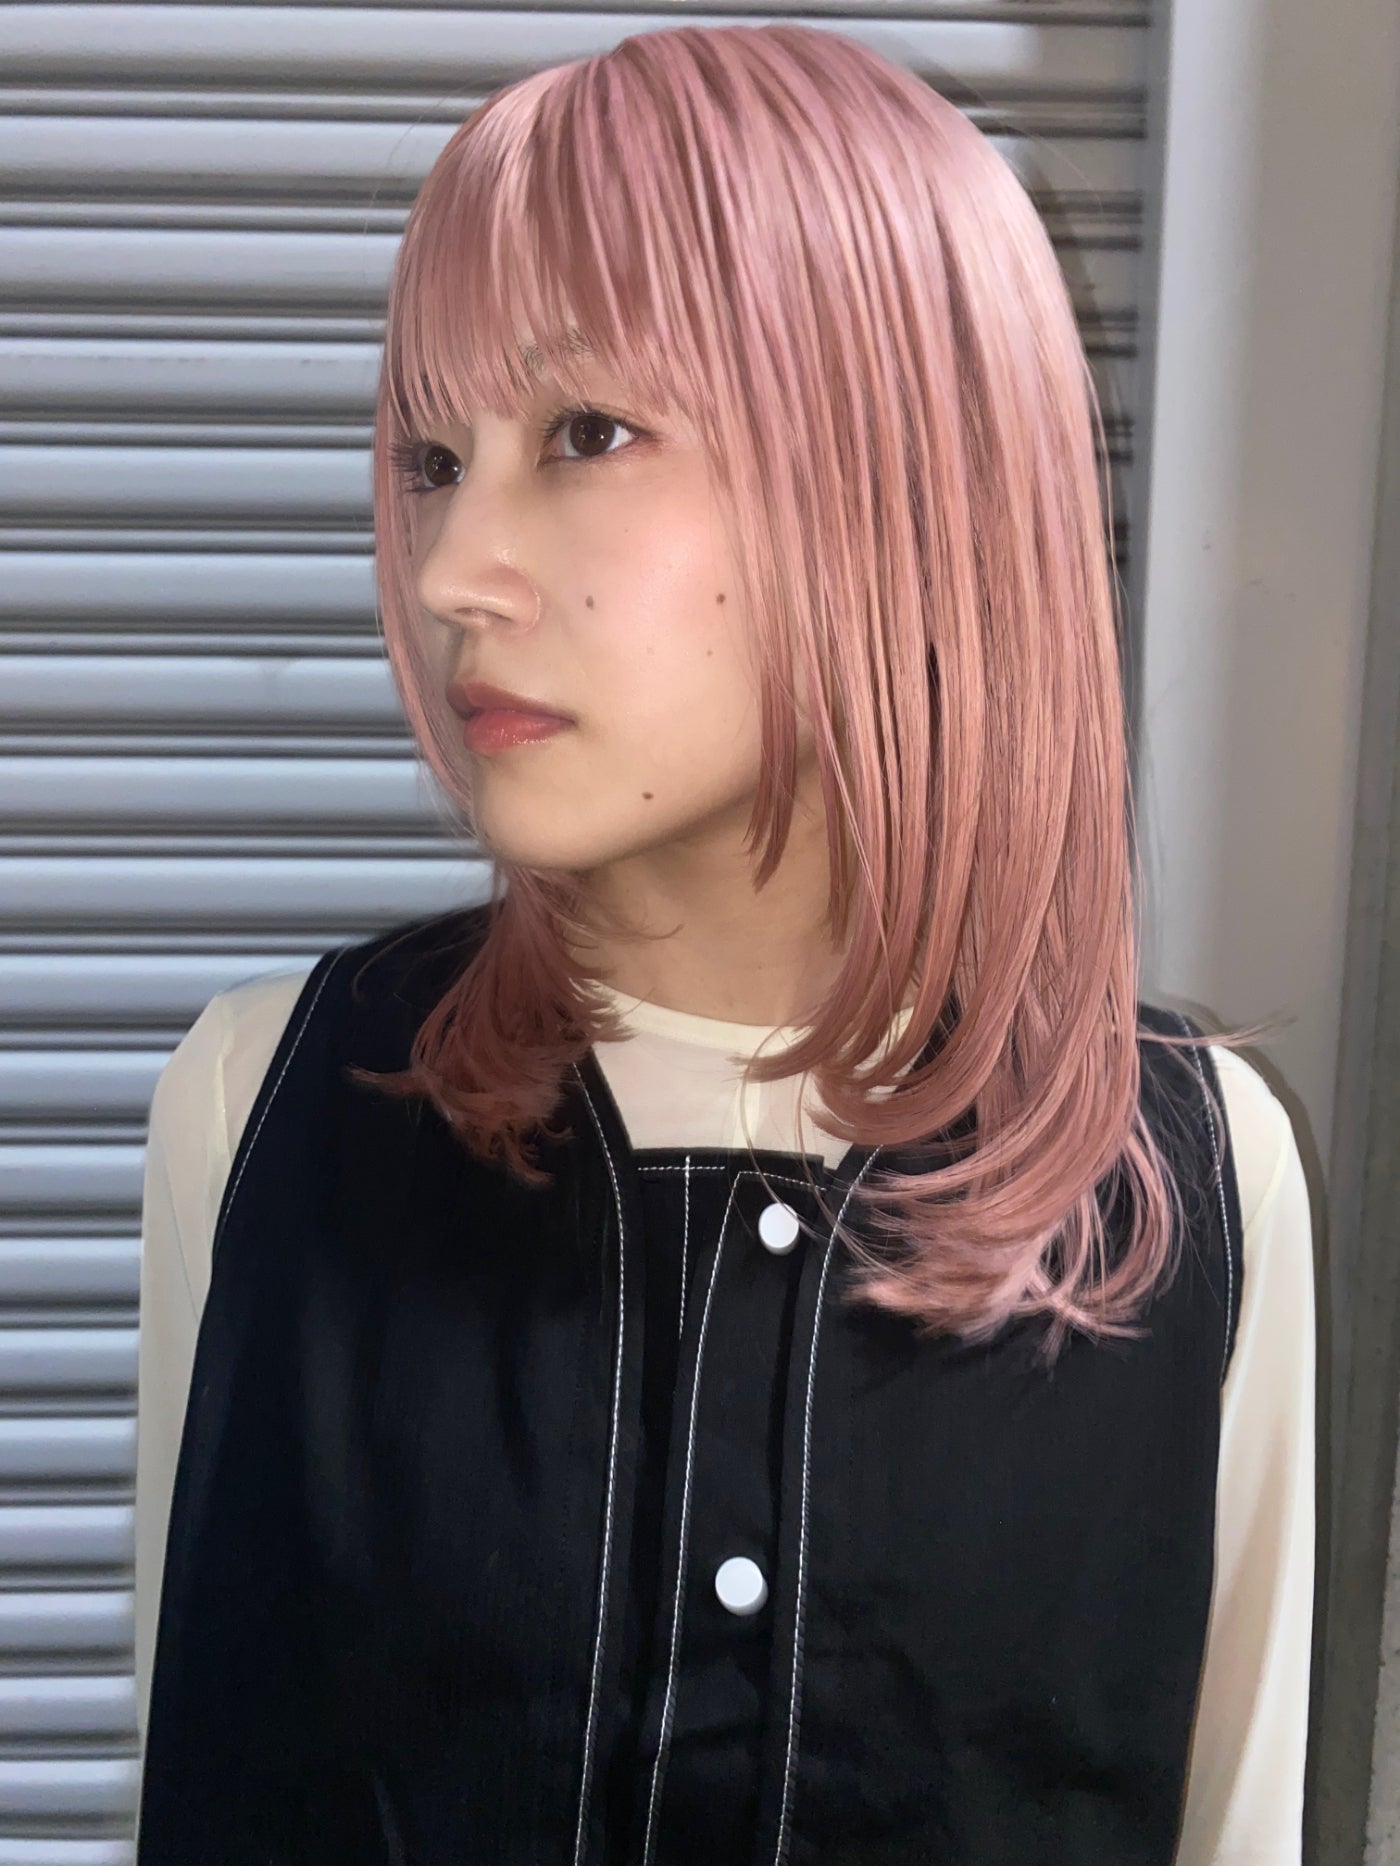 【ピンク】ロッタレイヤーミディアム